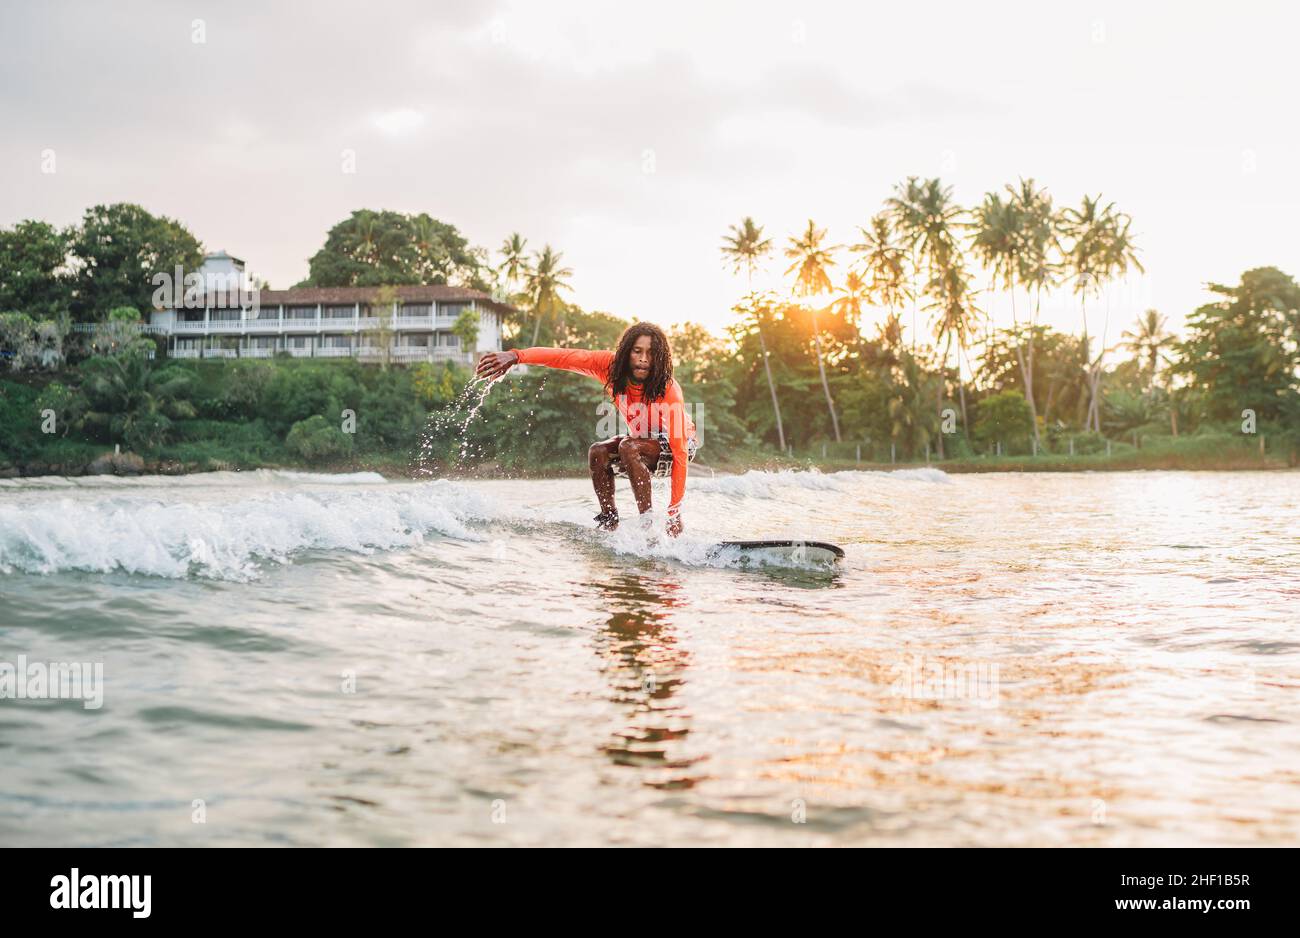 Schwarzer langhaariger Teenager-Junge, der ein langes Surfbrett reitet. Er fing eine Welle in einer Bucht des indischen Ozeans mit magischem Sonnenuntergang Hintergrund. Extreme Wassersportarten und ex Stockfoto